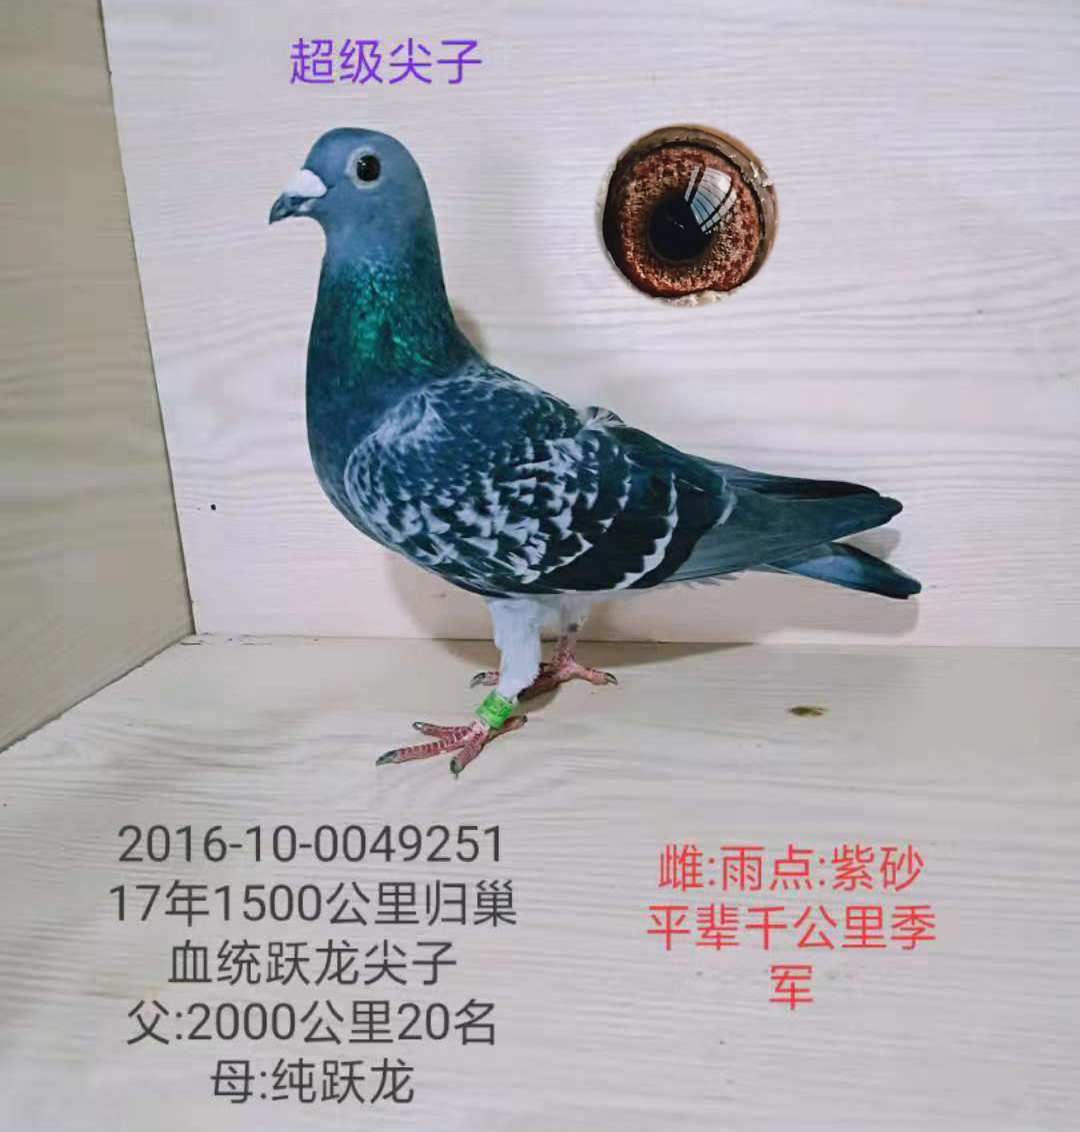 上海超越非凡吴淞鸽欣赏--中国信鸽信息网相册